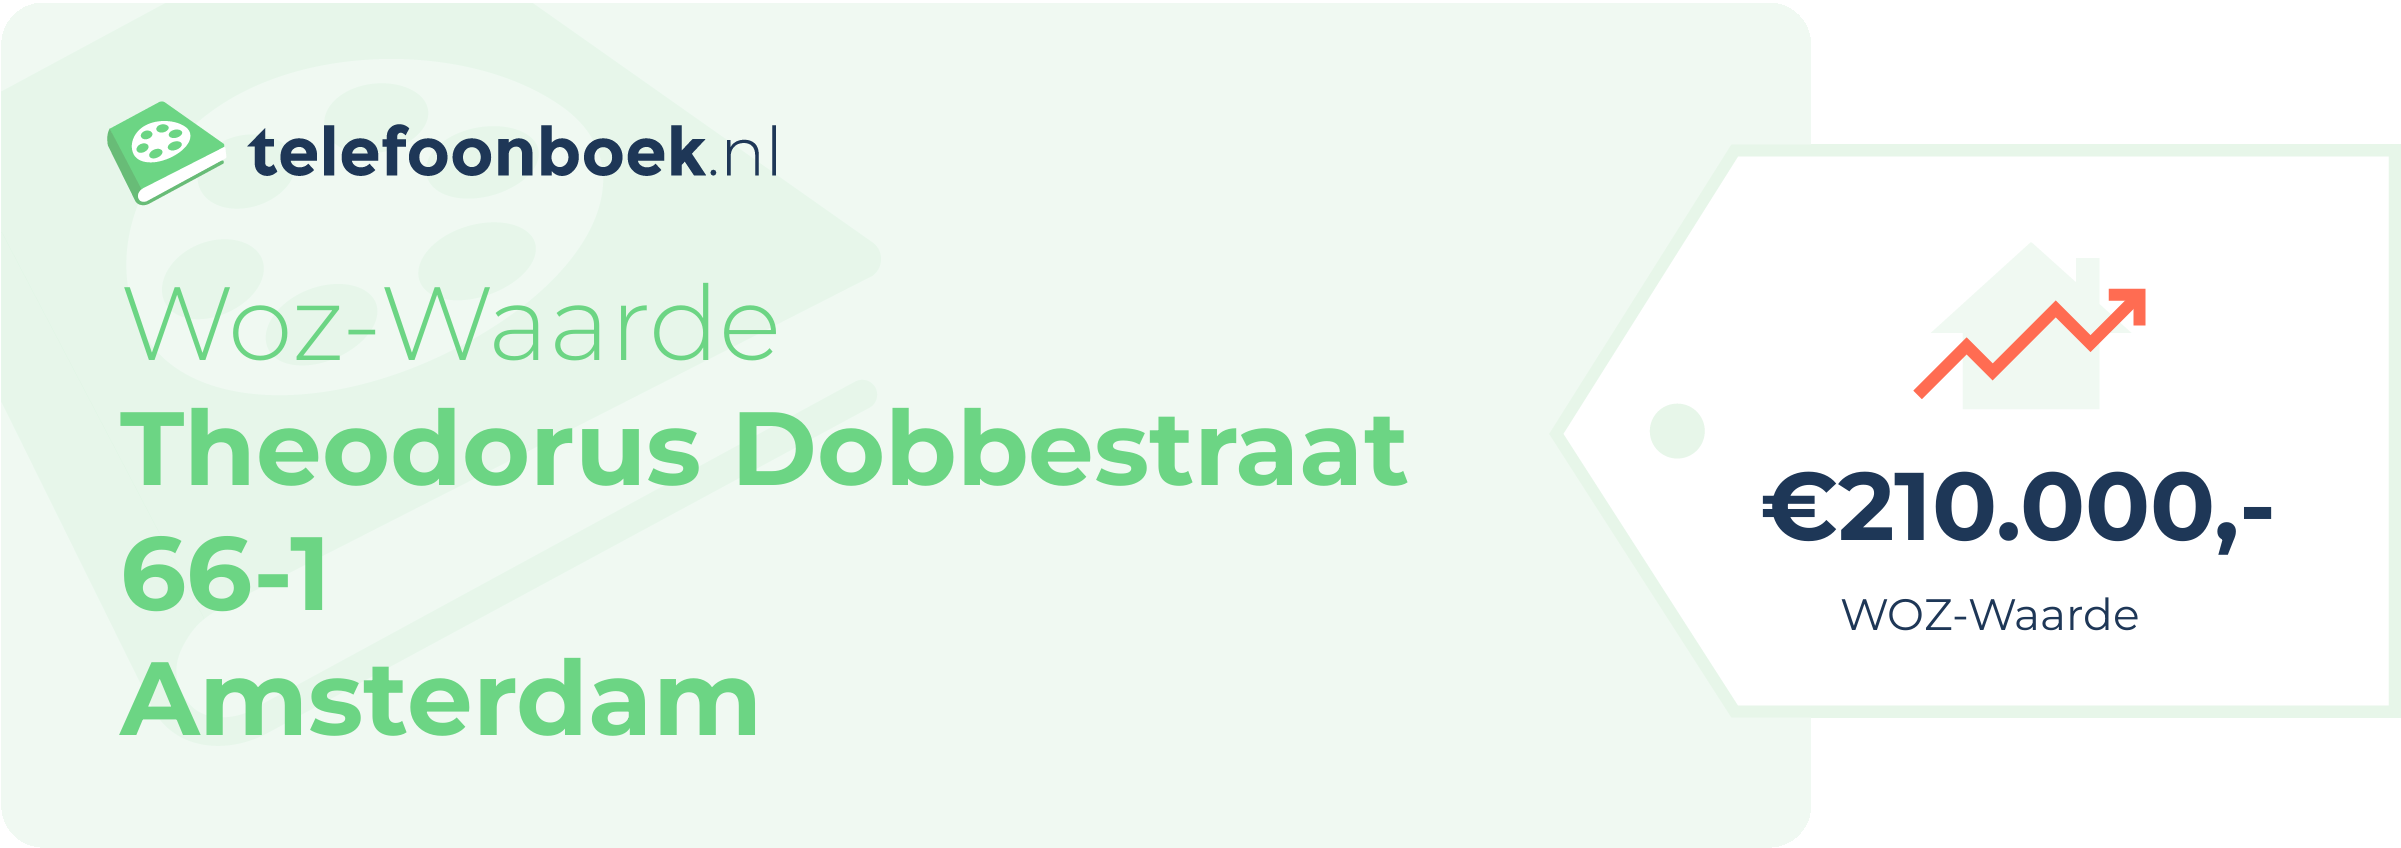 WOZ-waarde Theodorus Dobbestraat 66-1 Amsterdam